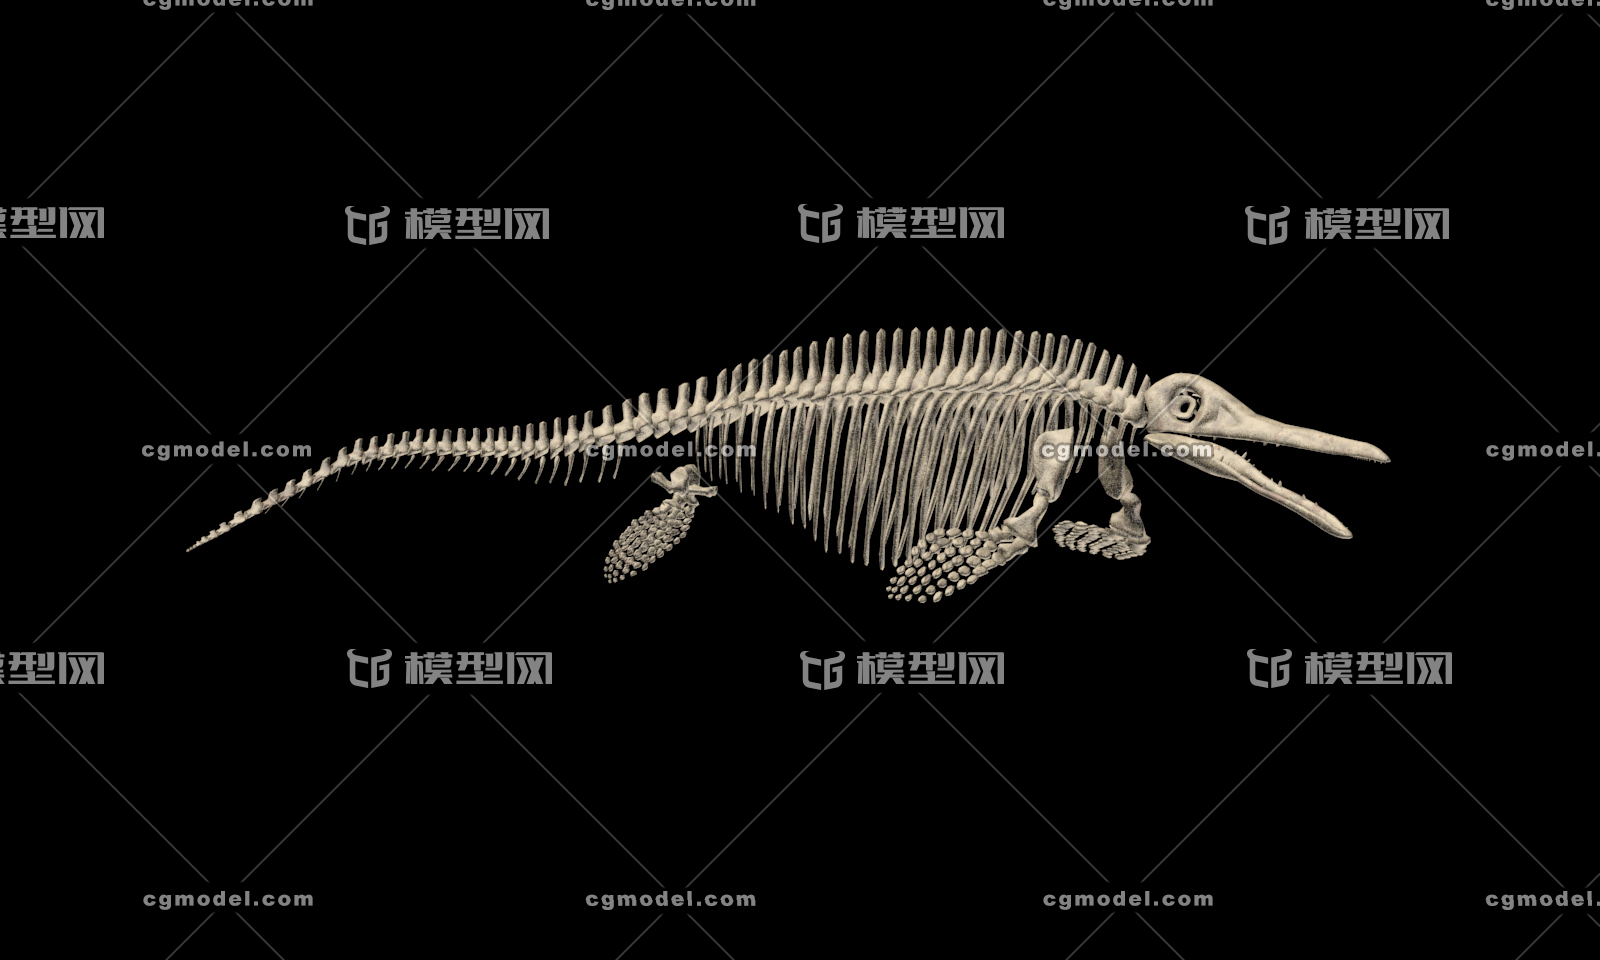 鱼龙 骨架模型 古生物骨架 博物馆 效果图 专用